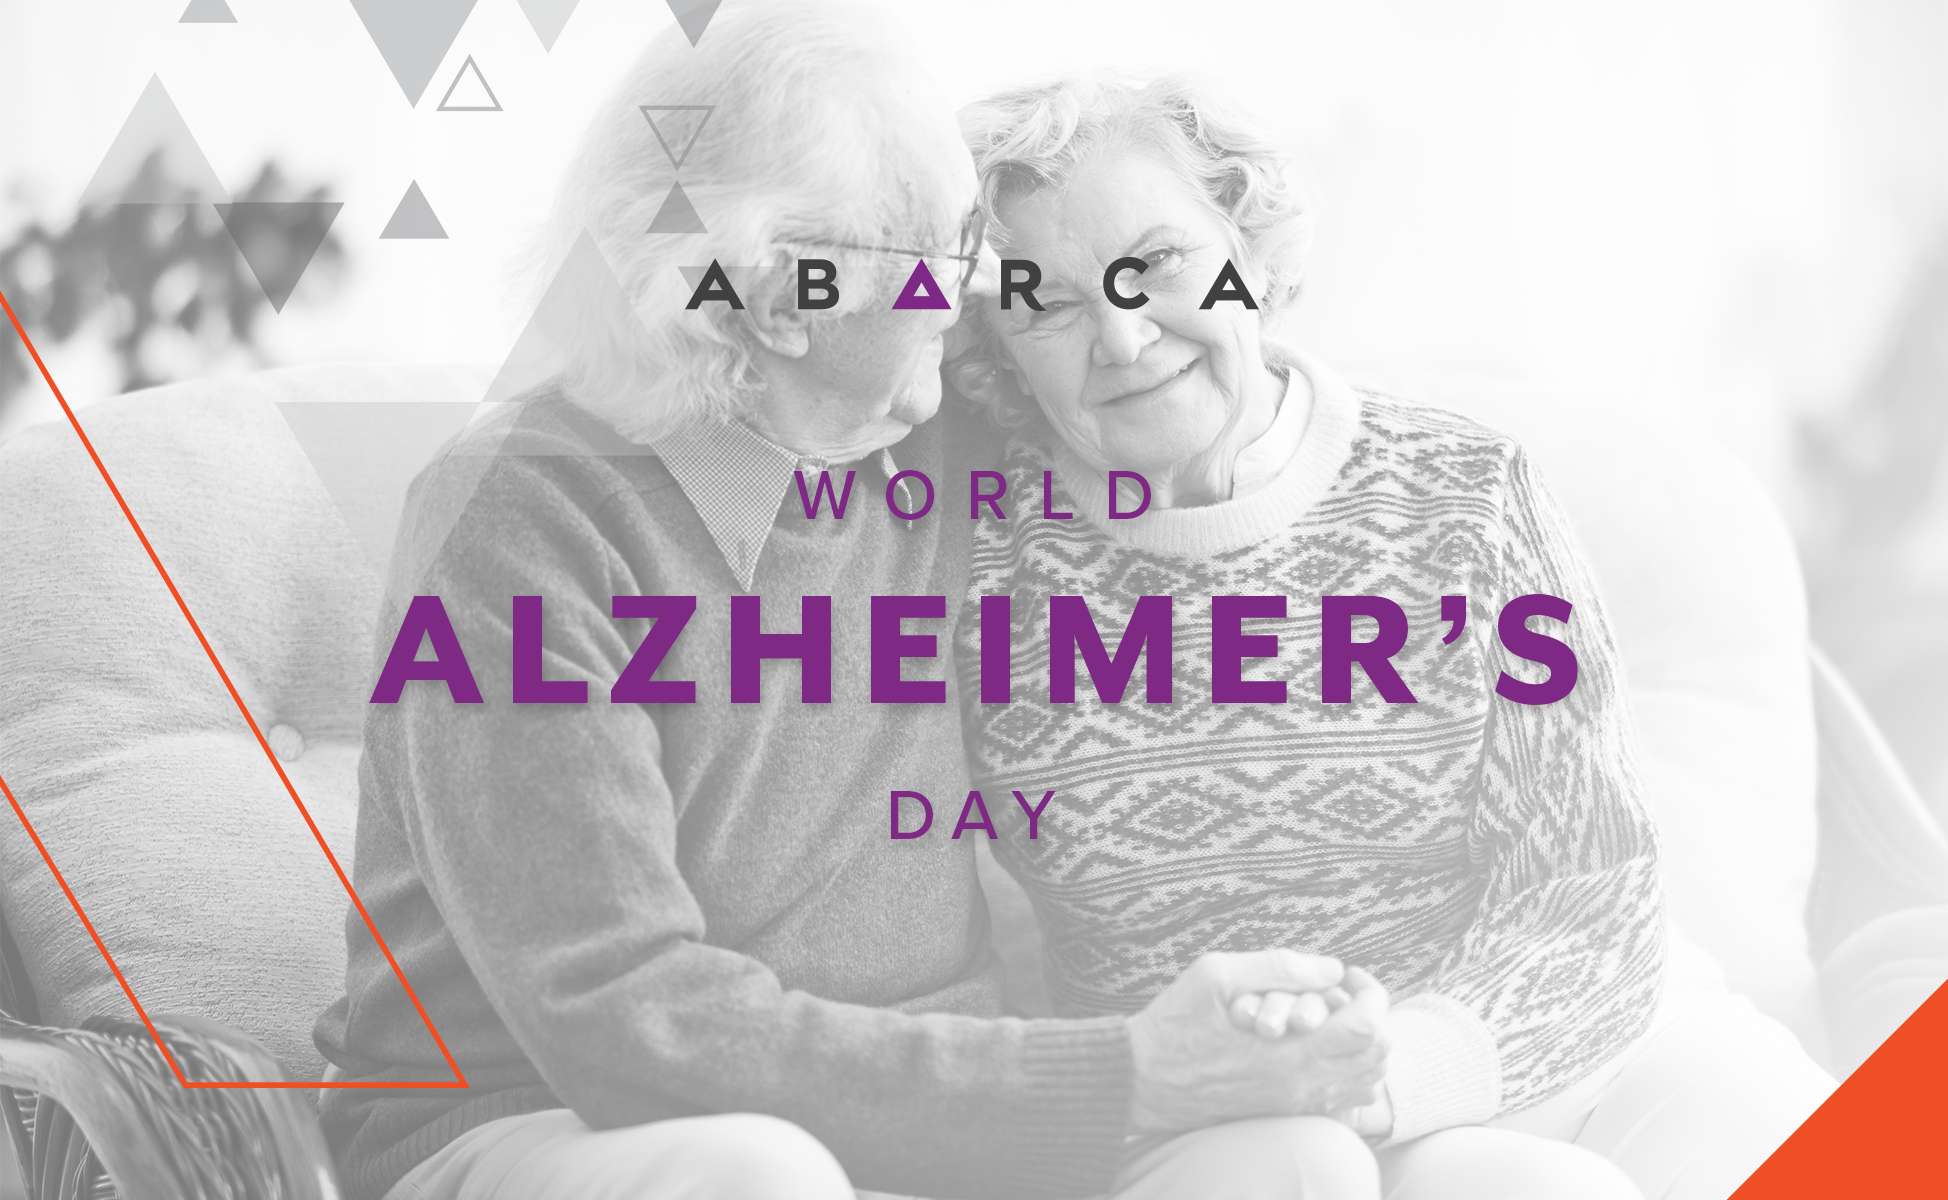 World Alzheimer's Day_Awareness Initiative_Abarcans